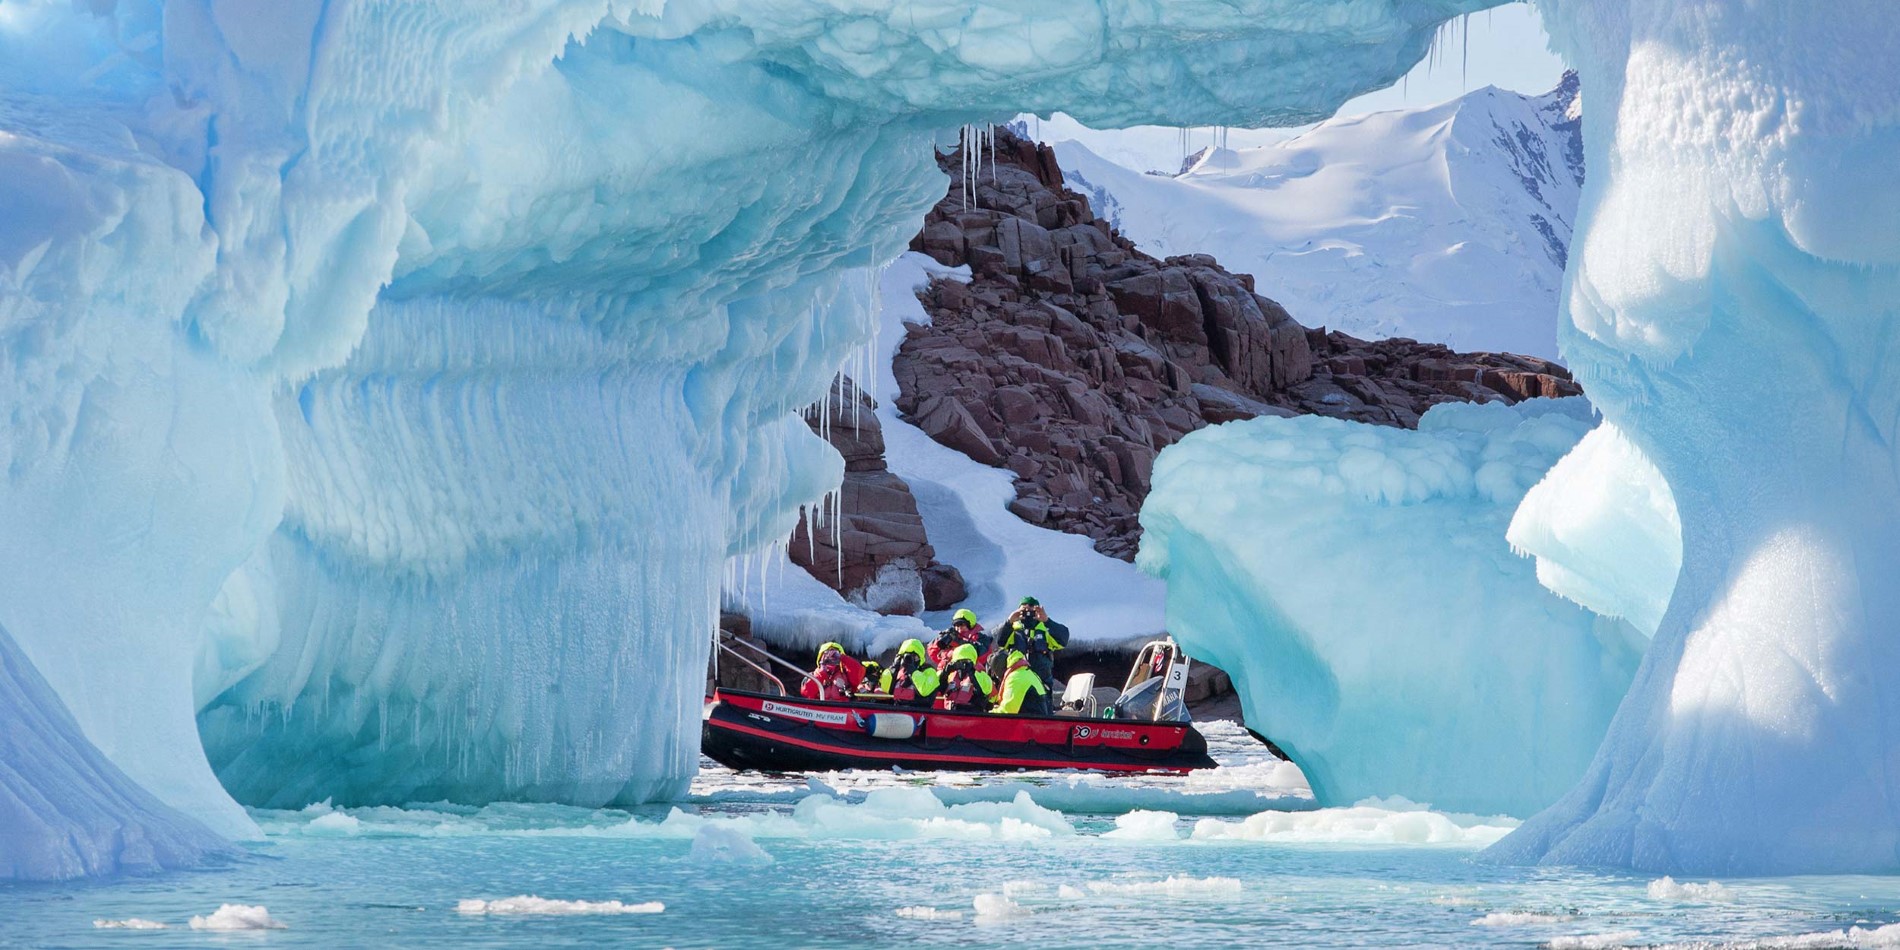 Gruppe av turister i liten båt blant spektakulære is formasjoner